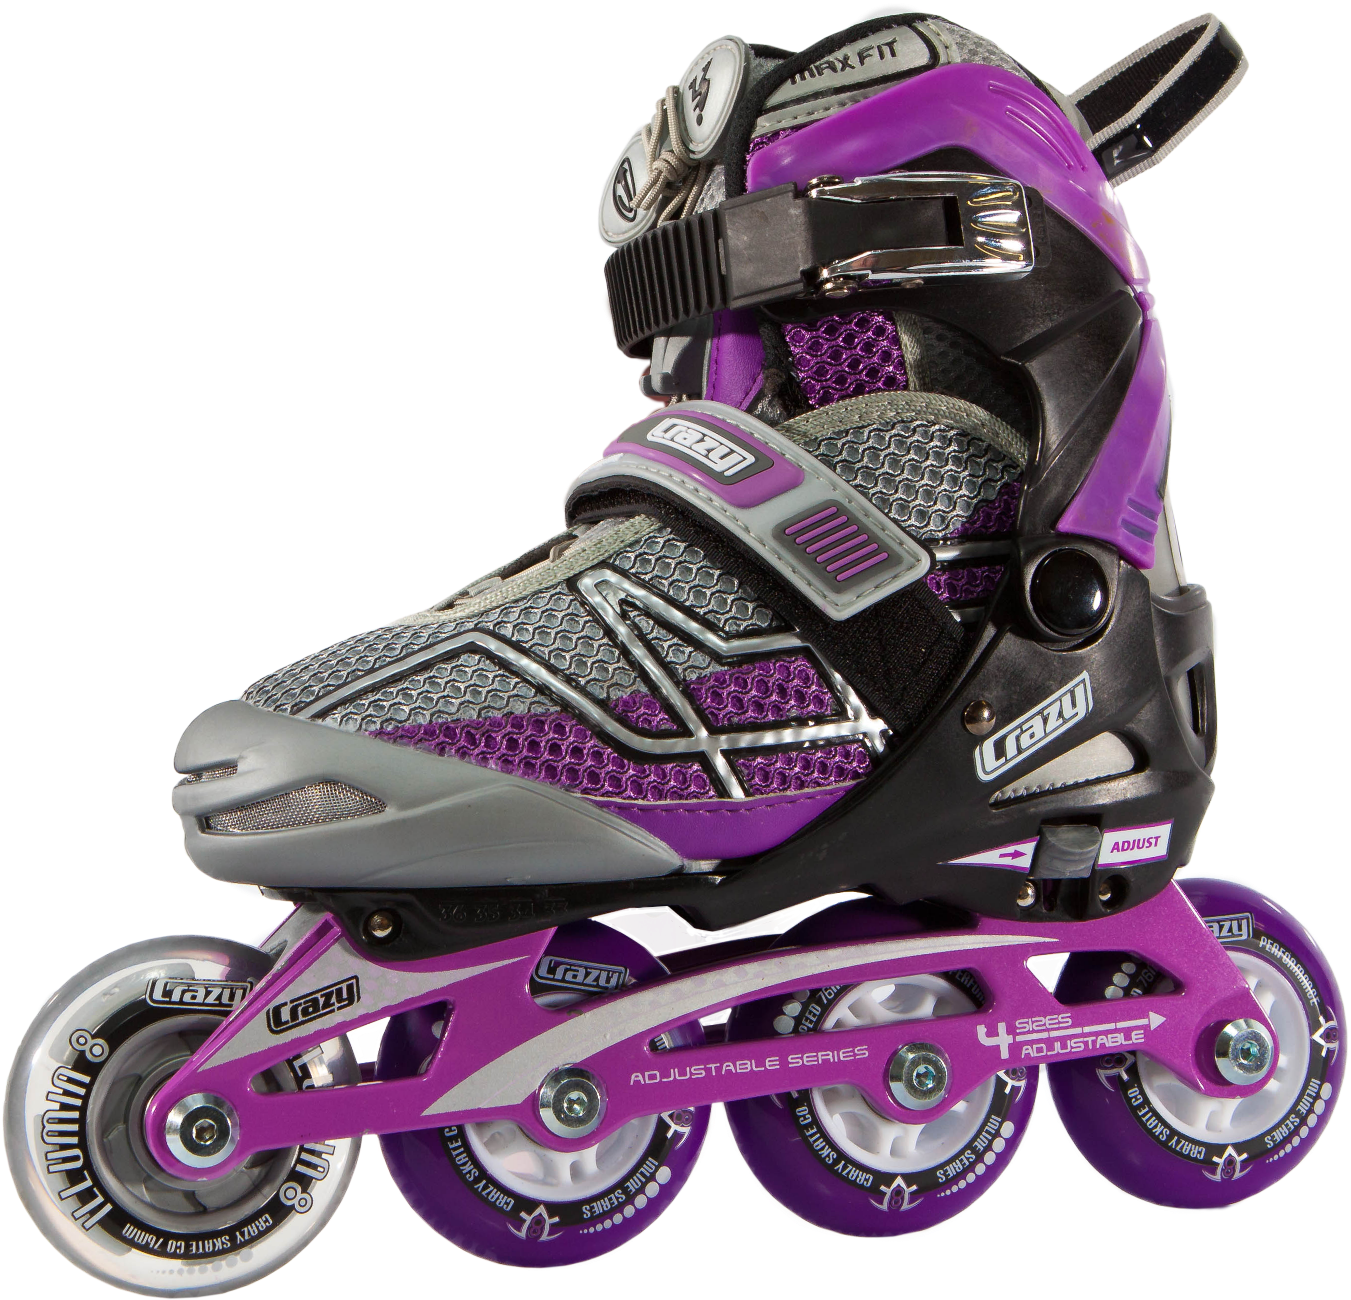 Crazy Skates 528 Adjustable Purple And Black Recreational - Inline Roller Skates Png (1396x1320), Png Download